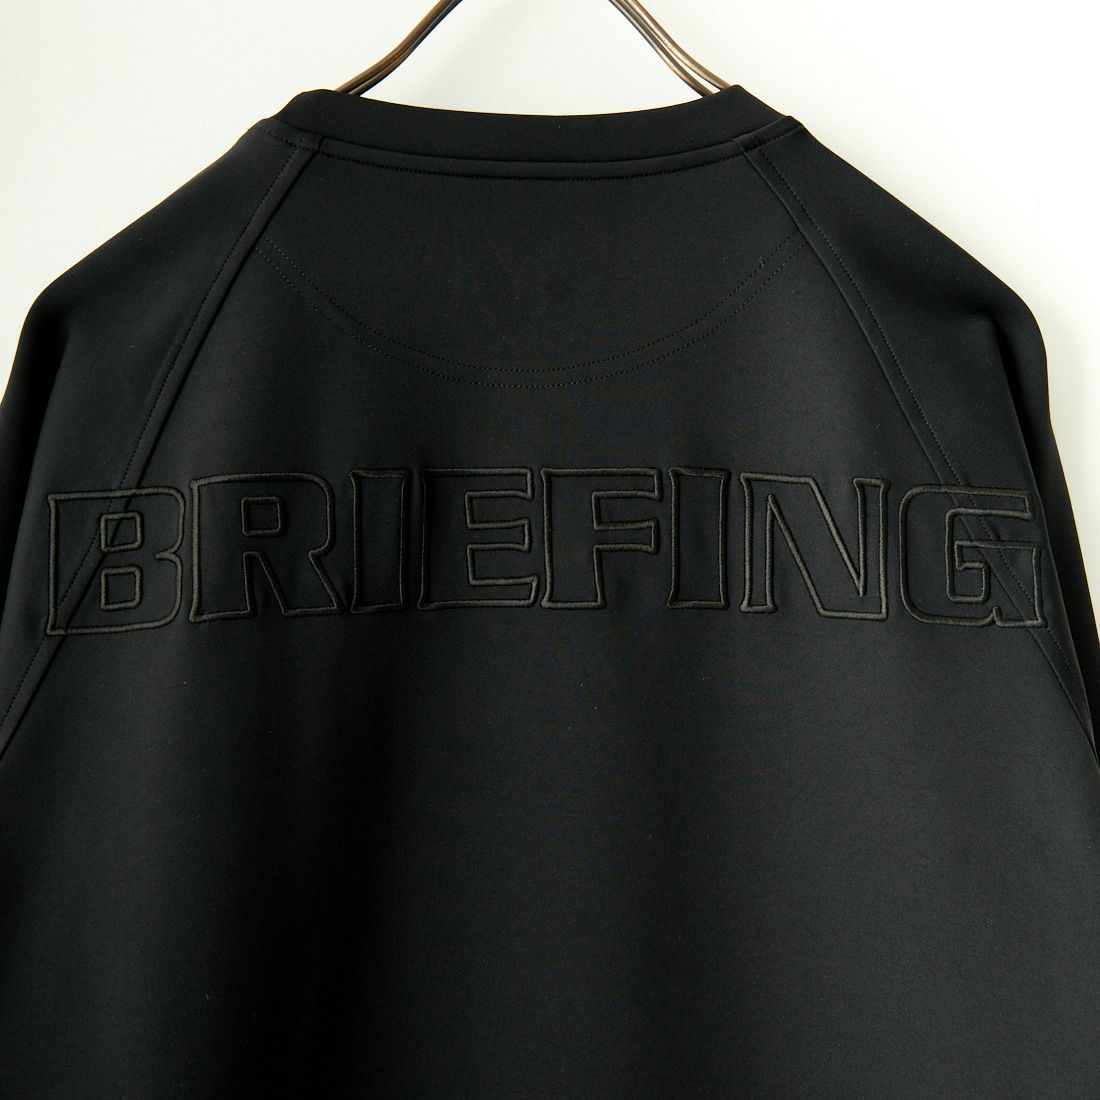 BRIEFING GOLF [ブリーフィング ゴルフ] クルーネック リラックスフィットスウェットシャツ [BRG241M23] 010 BLACK